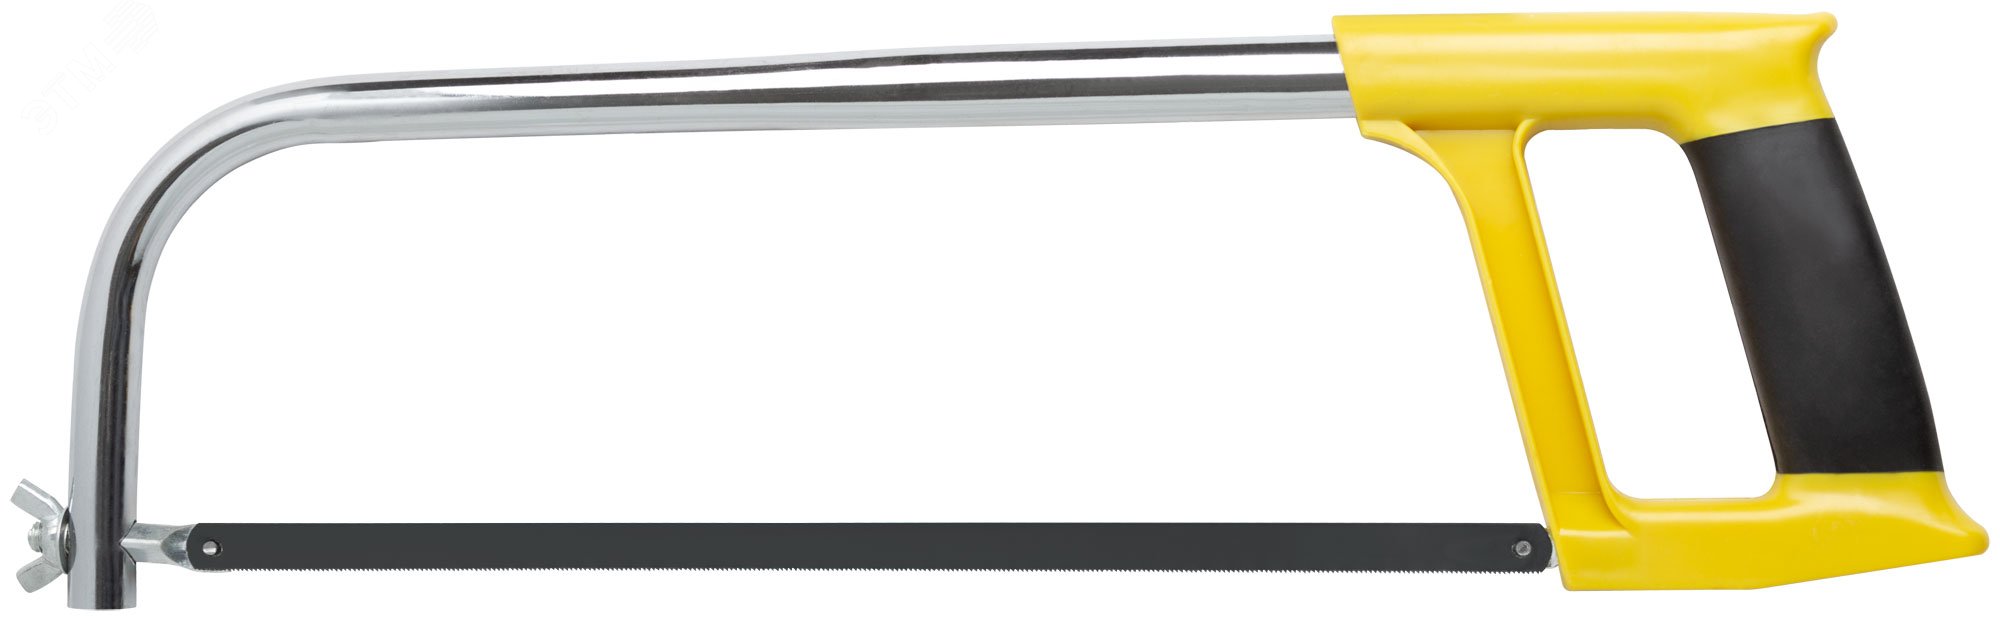 Ножовка по металлу 300 мм, пластиковая прорезиненная ручка, овальная рама 40067 FIT - превью